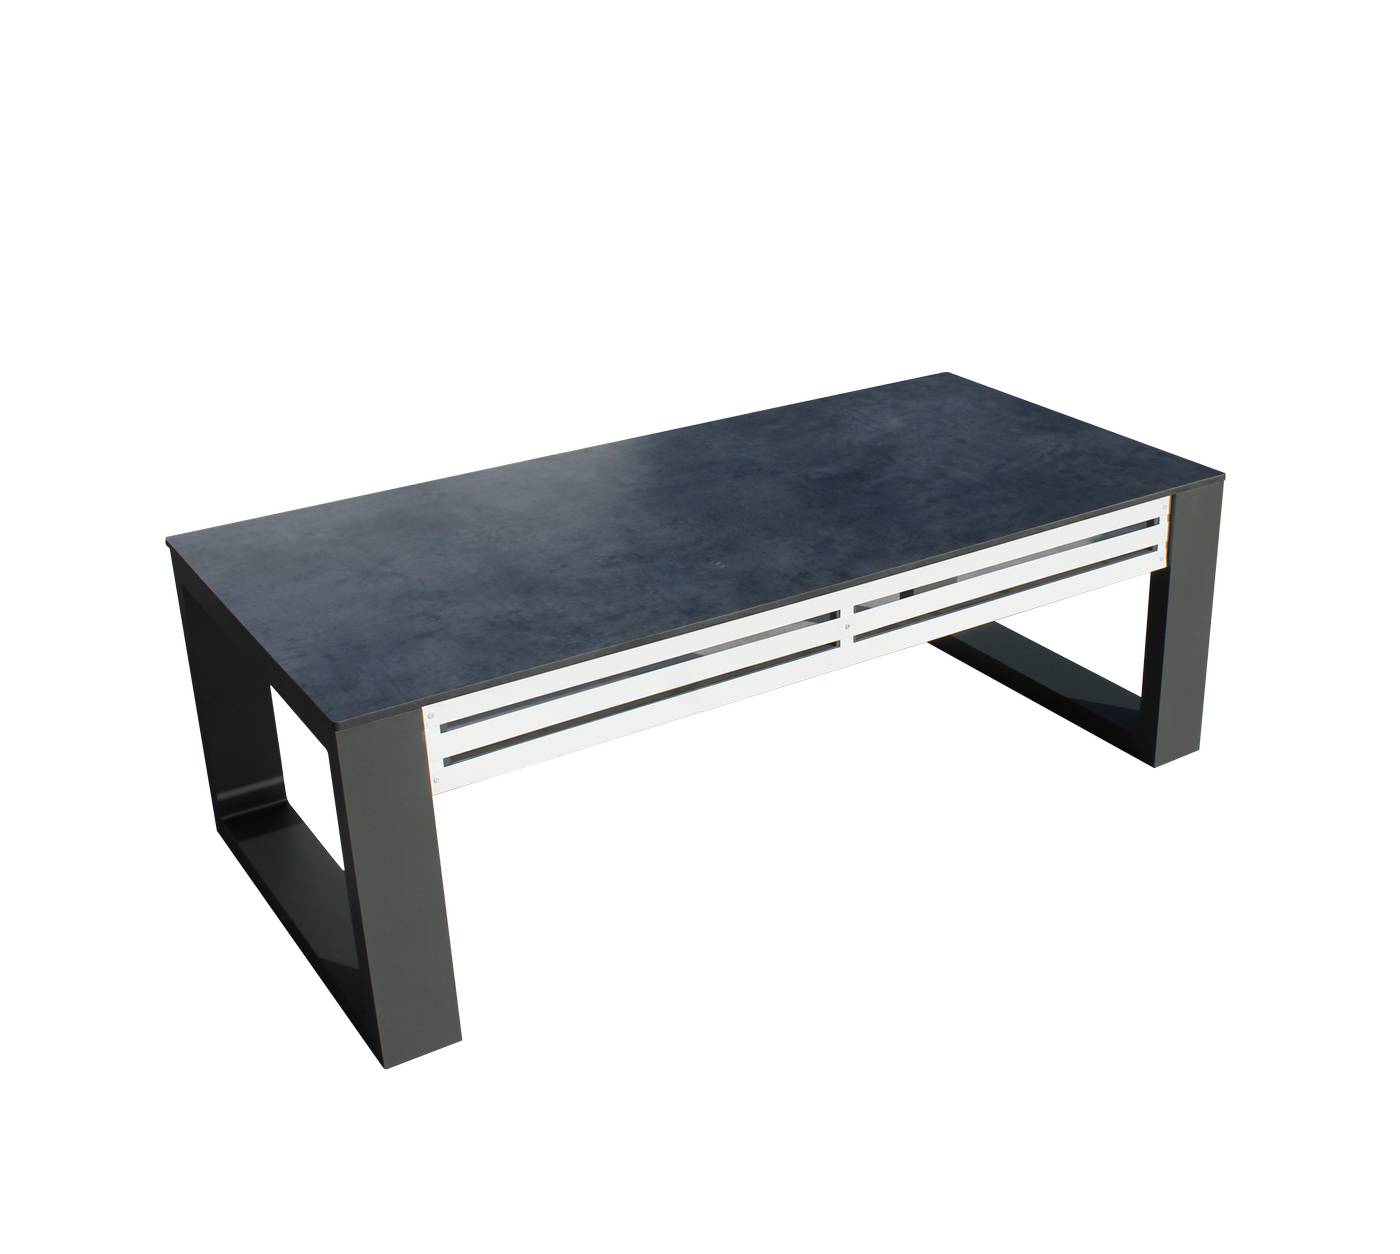 Exclusiva mesa de centro rectangular de aluminio bicolor con tablero HPL de 135 cm.